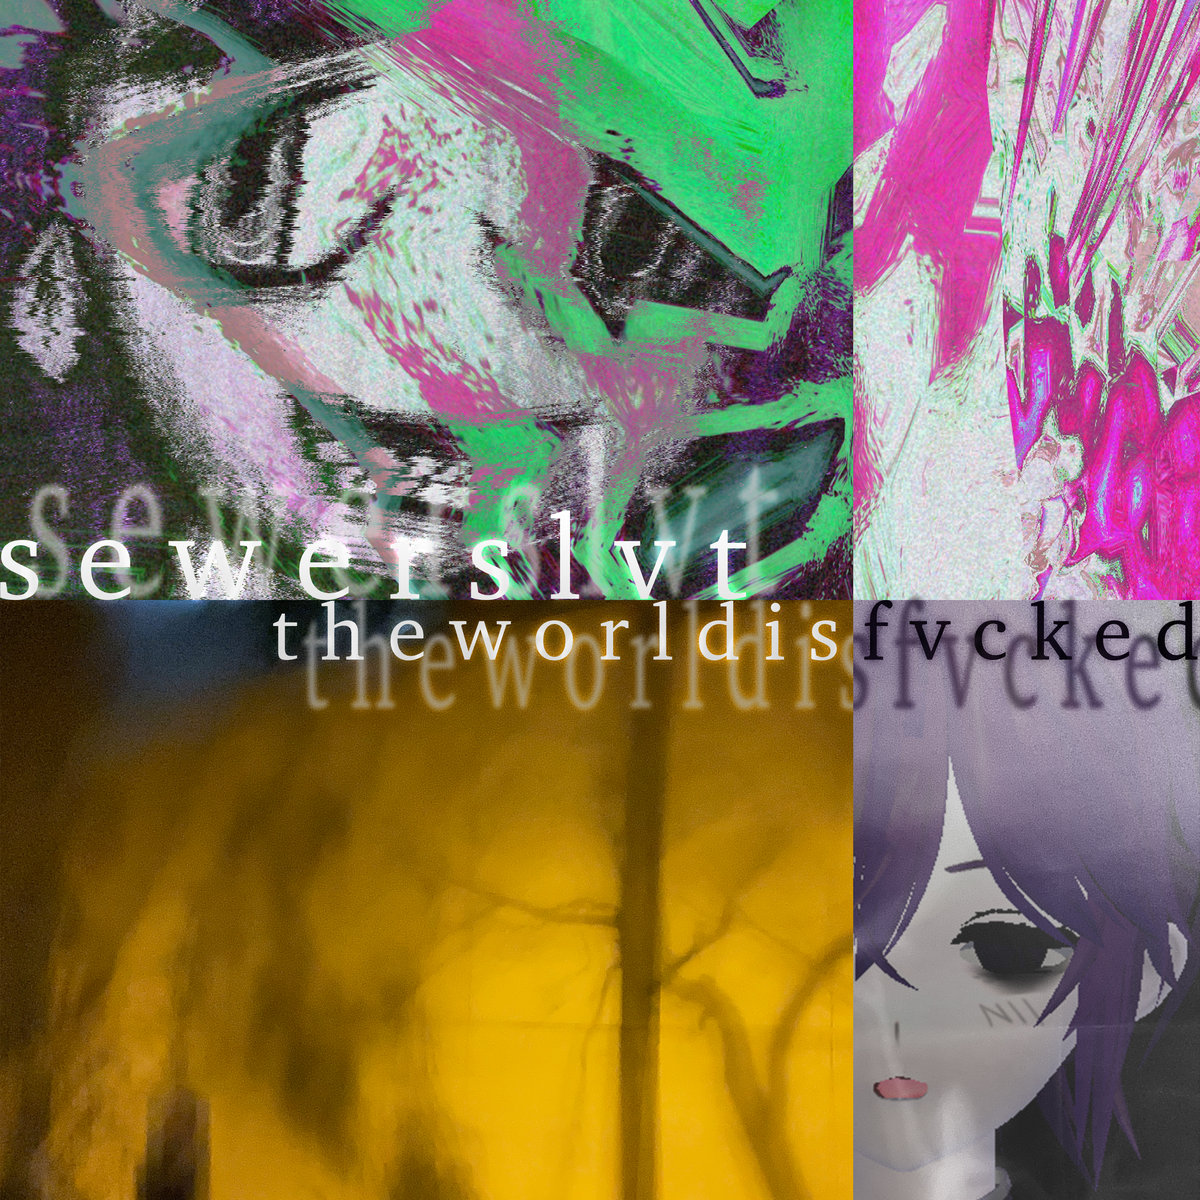 Sewerslvt — Jvnko Still Loves You cover artwork